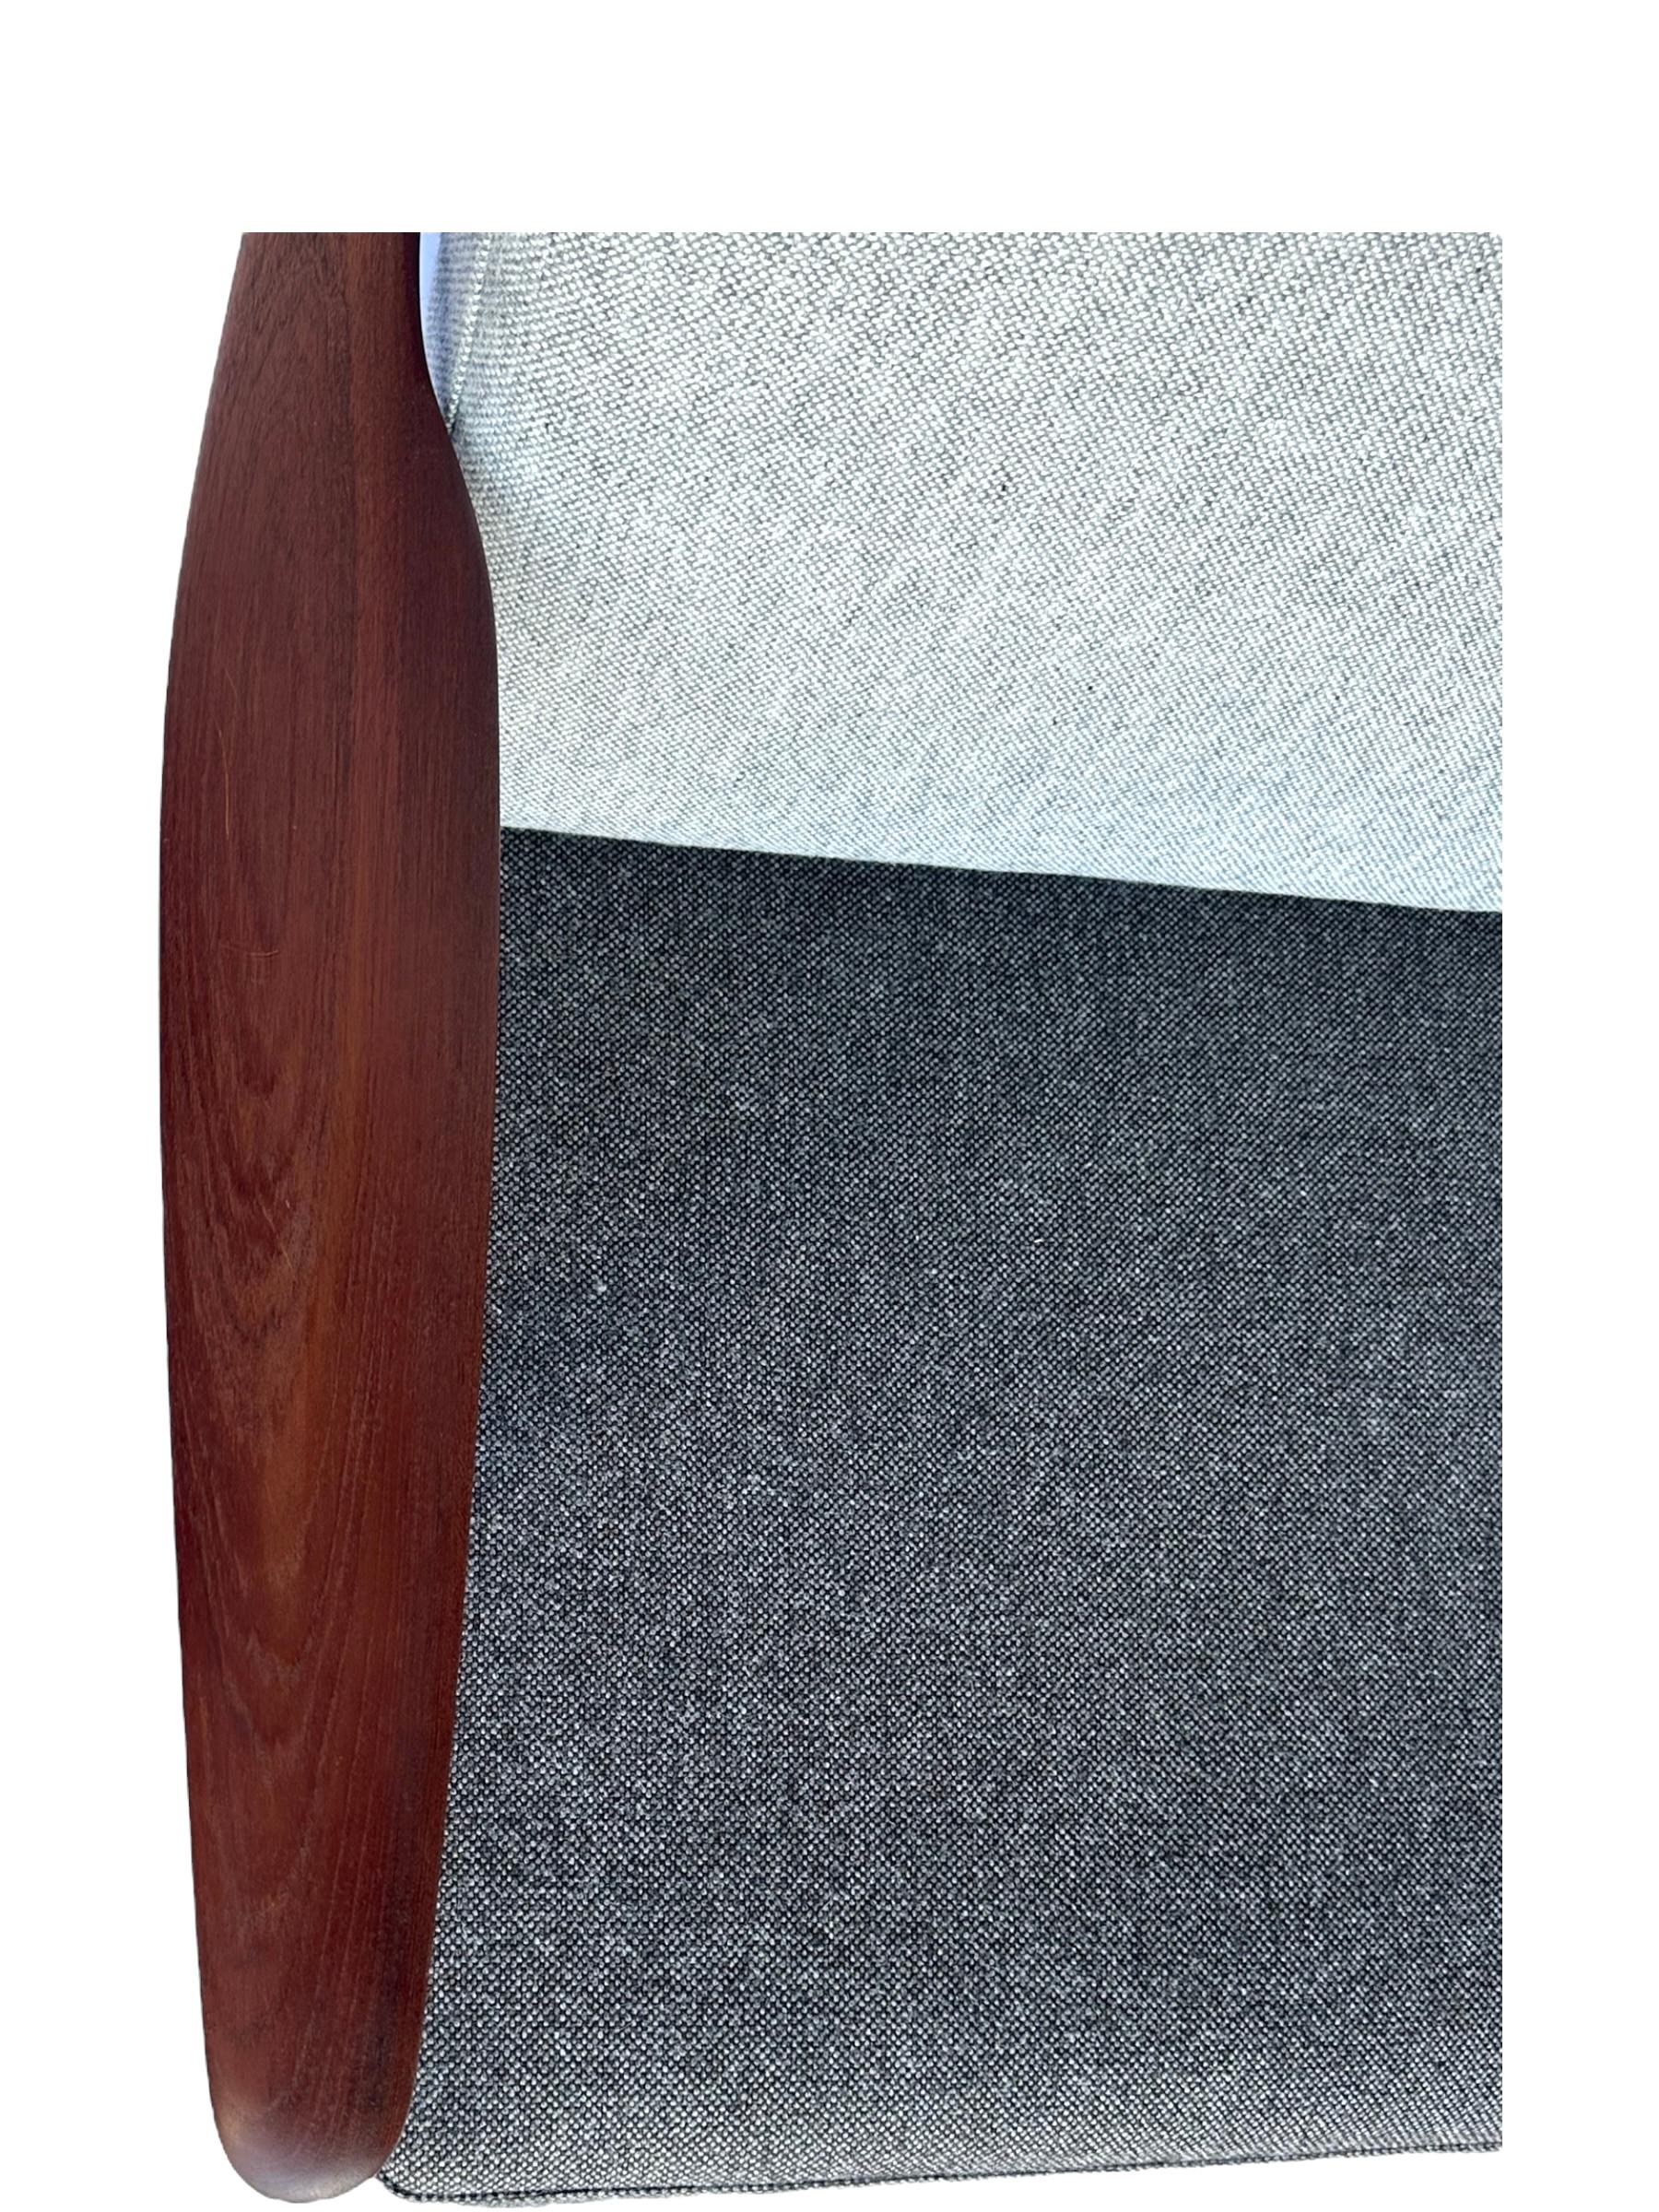 Hans J. Wegner for Getama Signed Sofa with new Mataram Upholstery For Sale 2